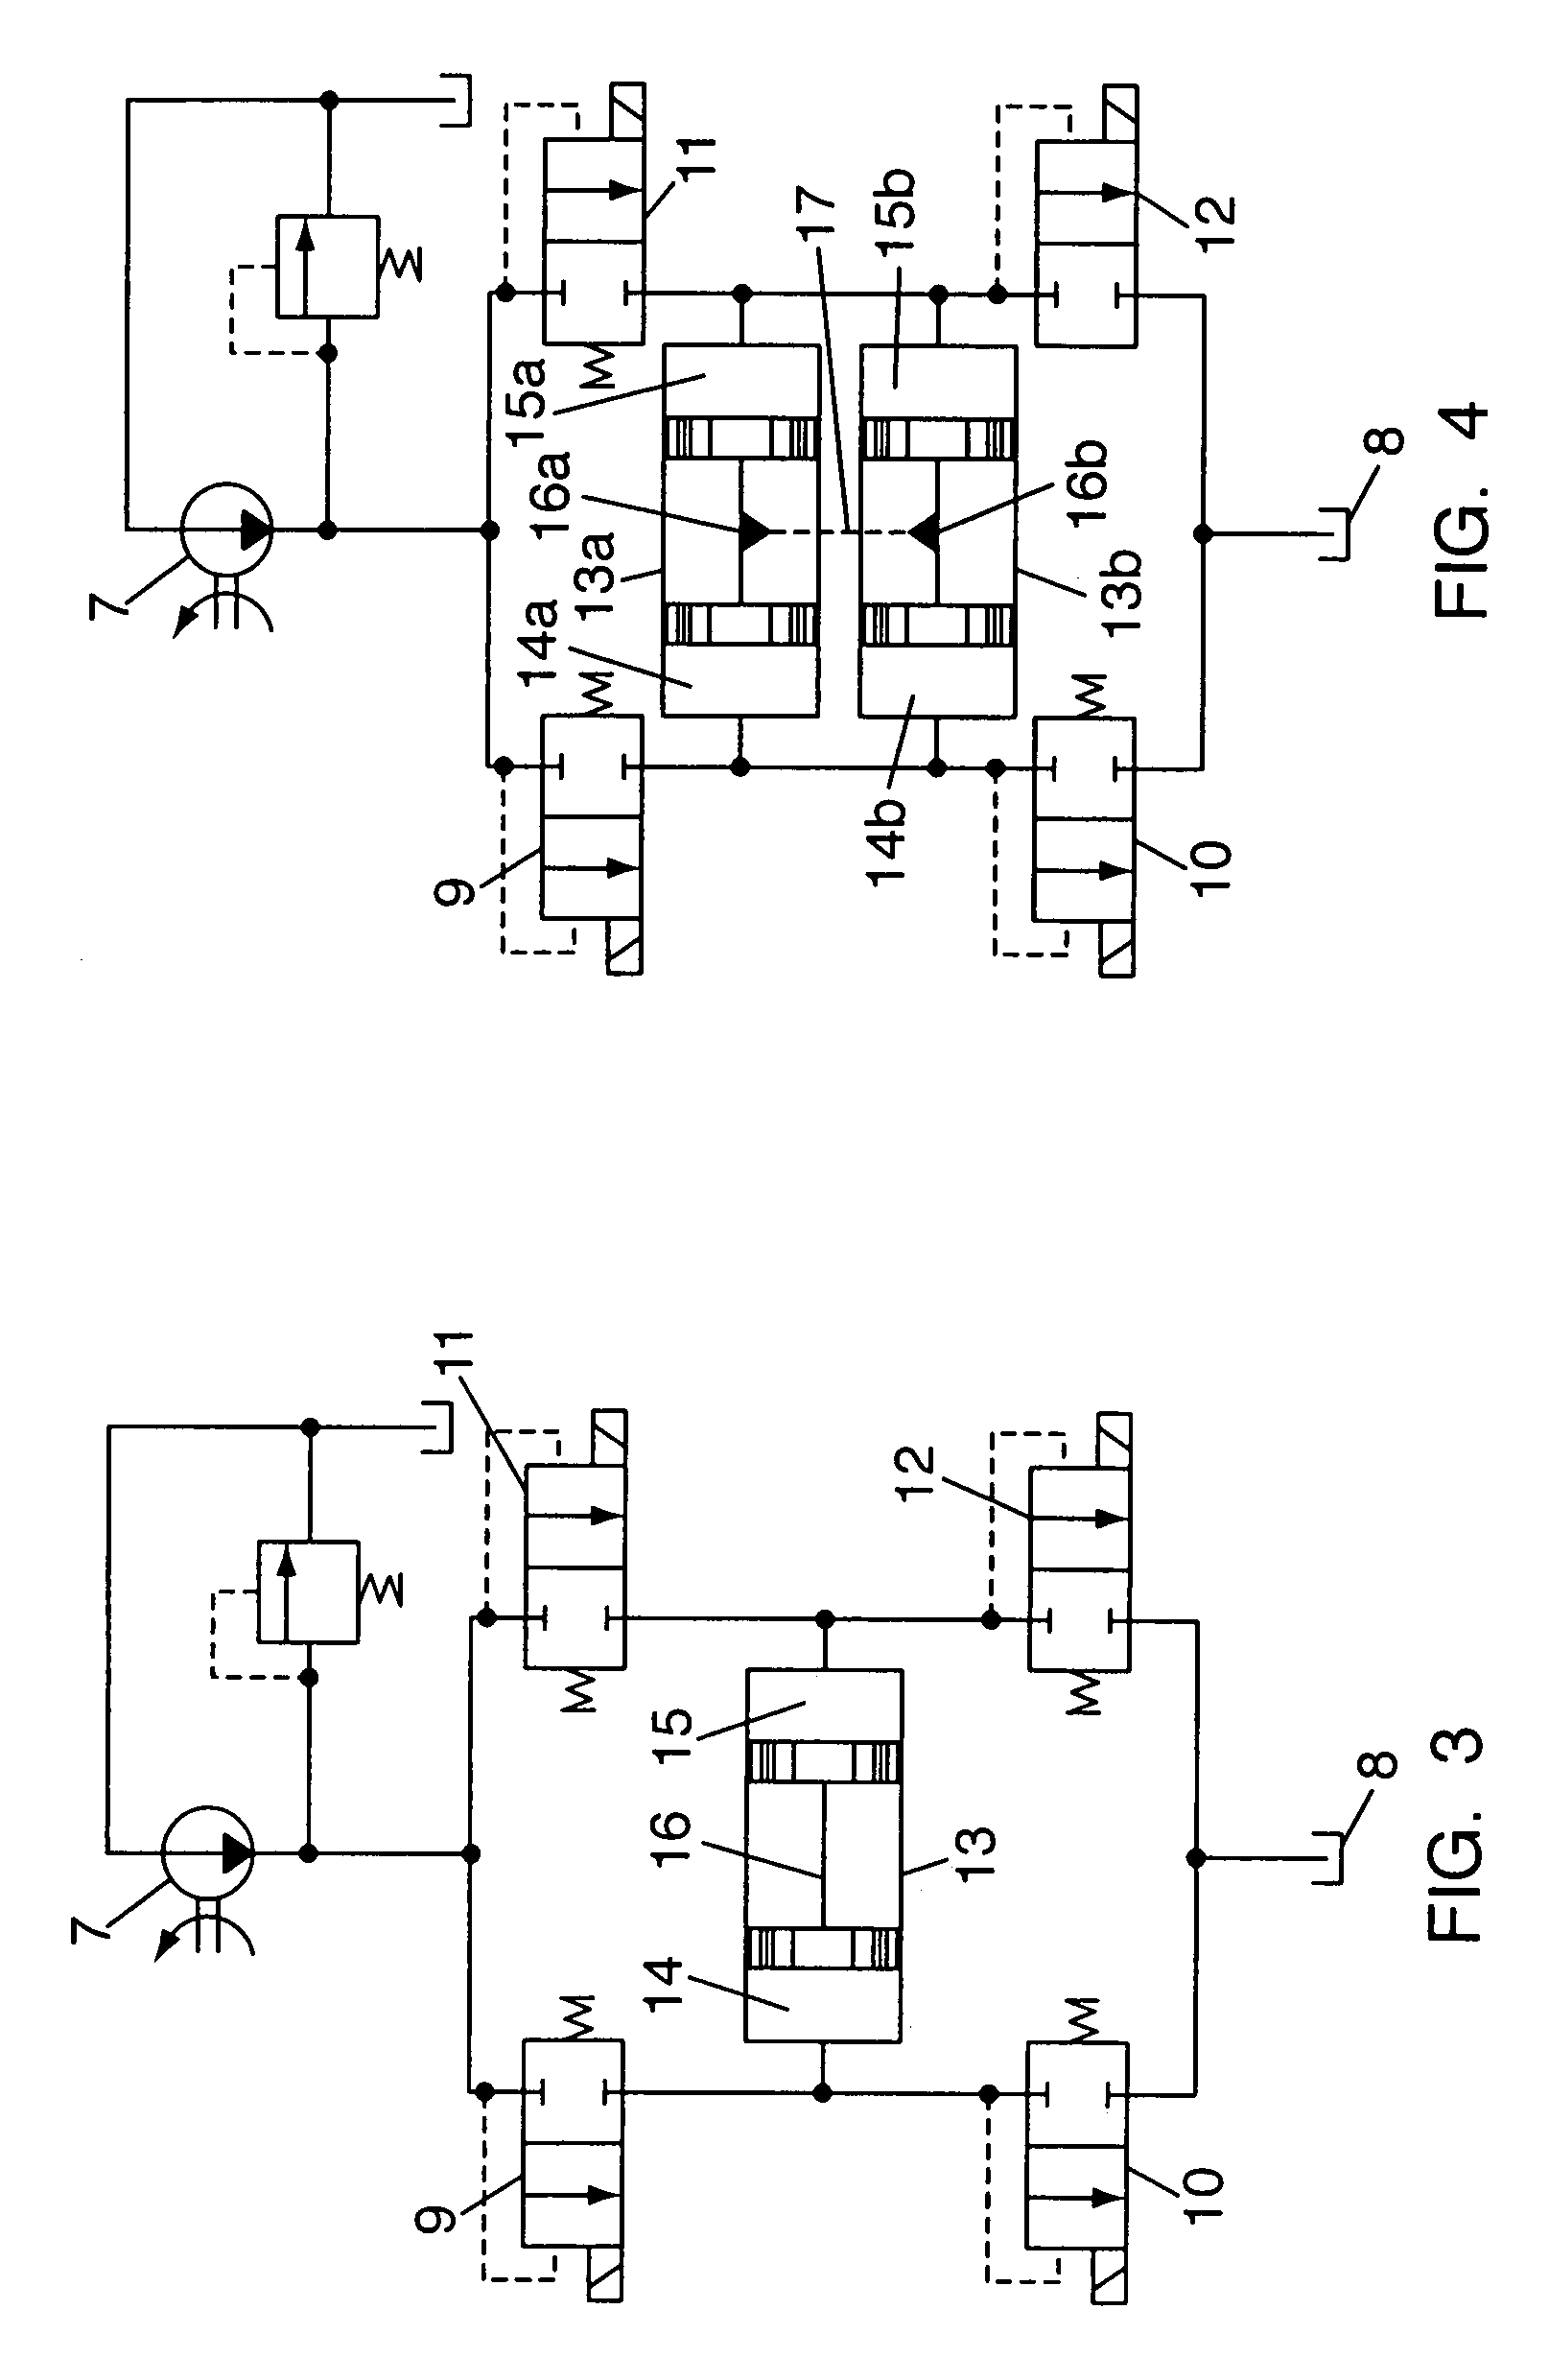 Control system for a hydraulic servomotor